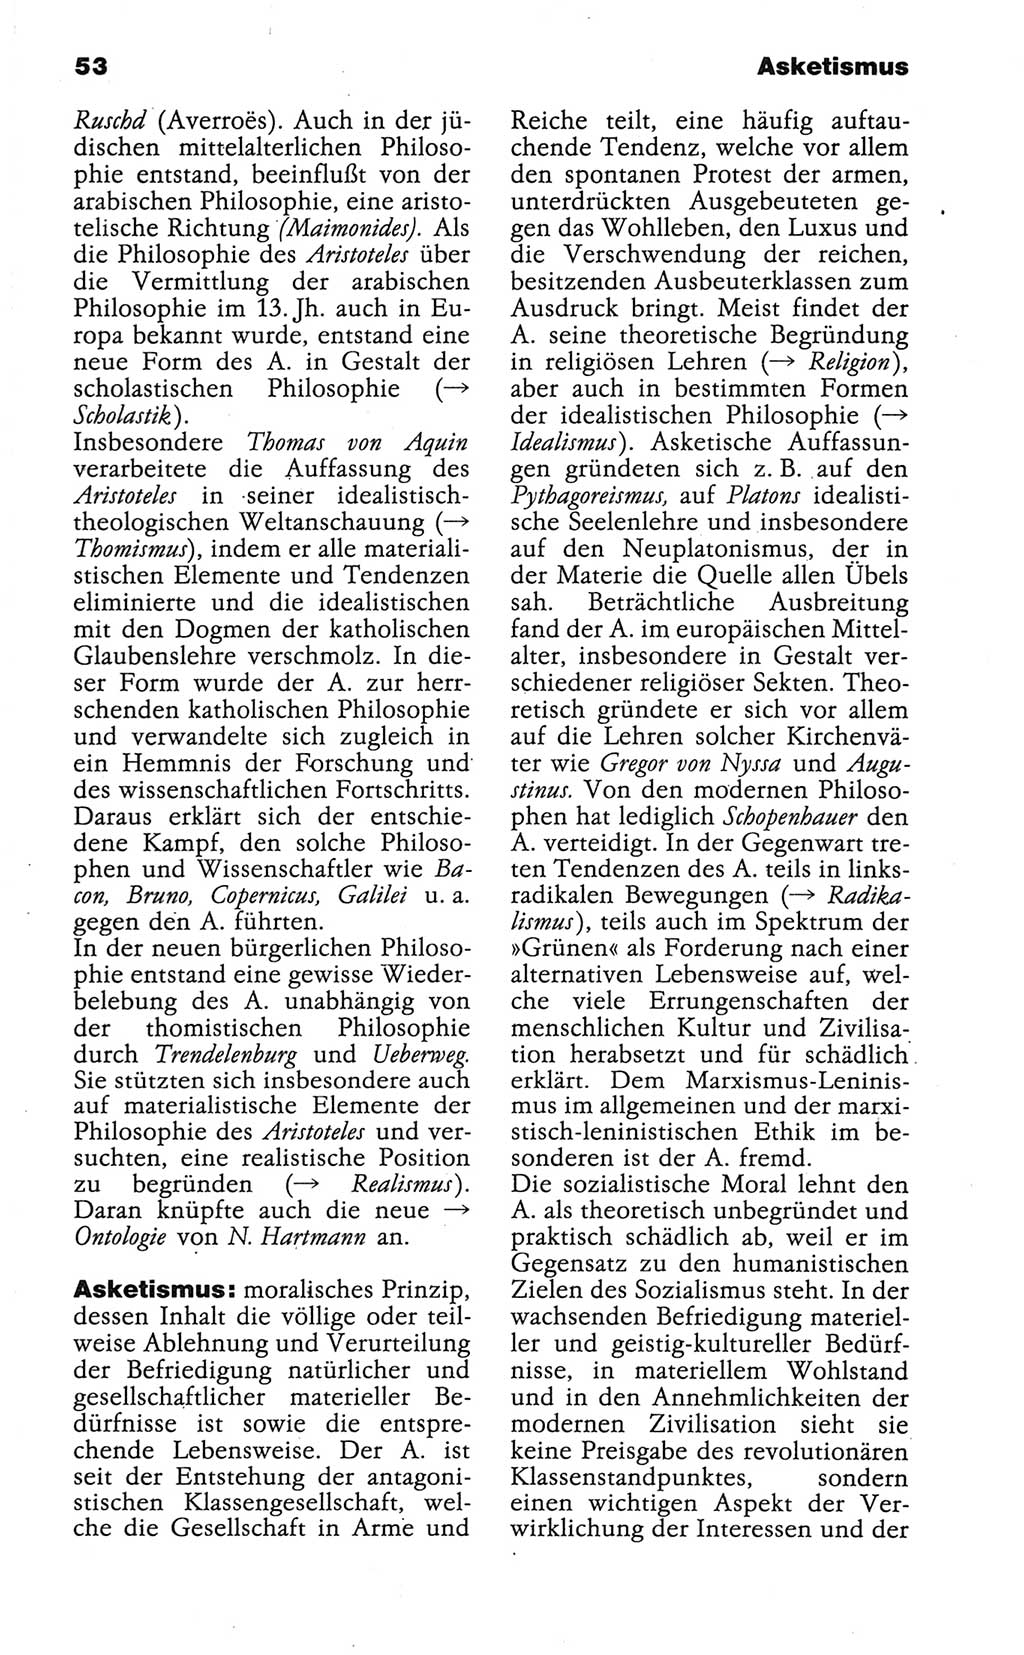 Wörterbuch der marxistisch-leninistischen Philosophie [Deutsche Demokratische Republik (DDR)] 1986, Seite 53 (Wb. ML Phil. DDR 1986, S. 53)